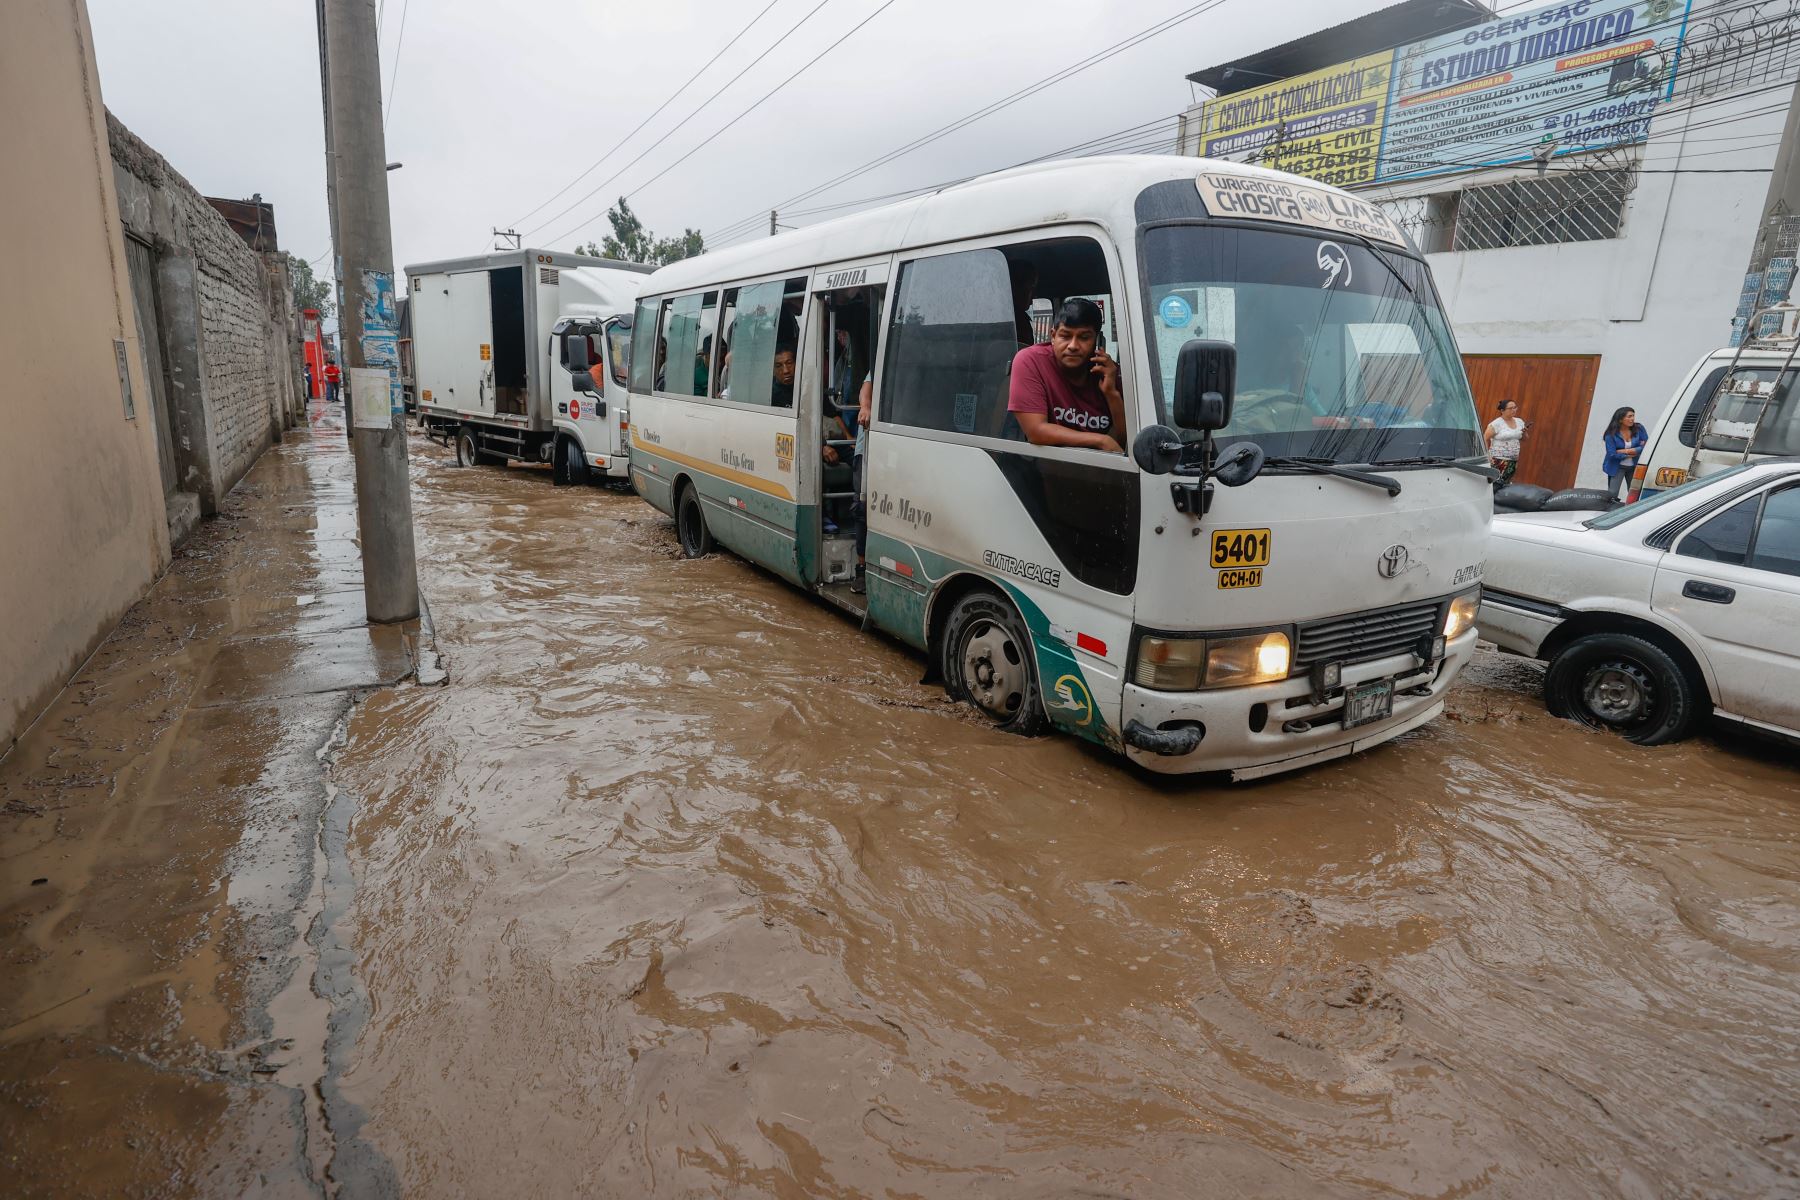 Fuertes lluvias en Chosica amenazan con aumentar el caudal de los ríos y con esto pone en peligro casas ubicadas cerca durante un posible huayco.Foto:ANDINA/Vidal Tarqui